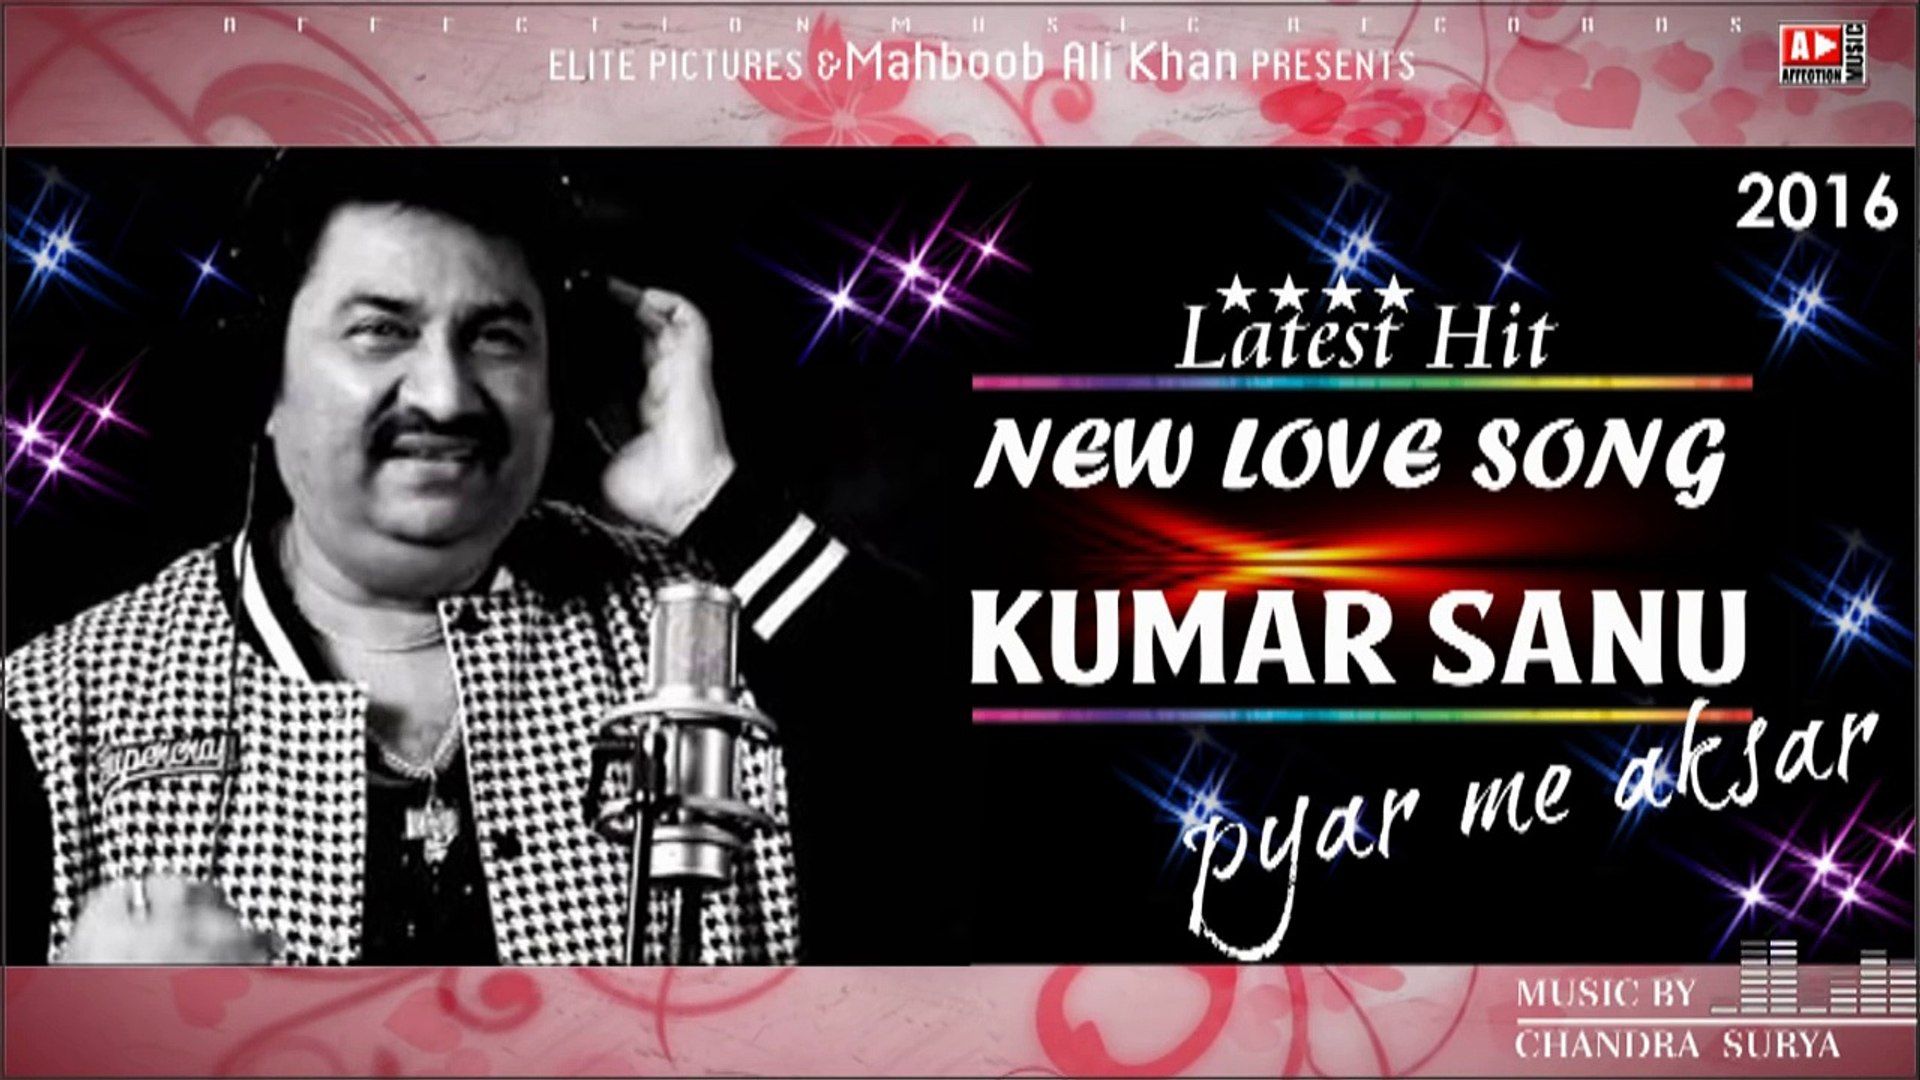 Kumar Sanu New Hindi Love Song 2016 Latest Hit Best Of Kumar Sanu